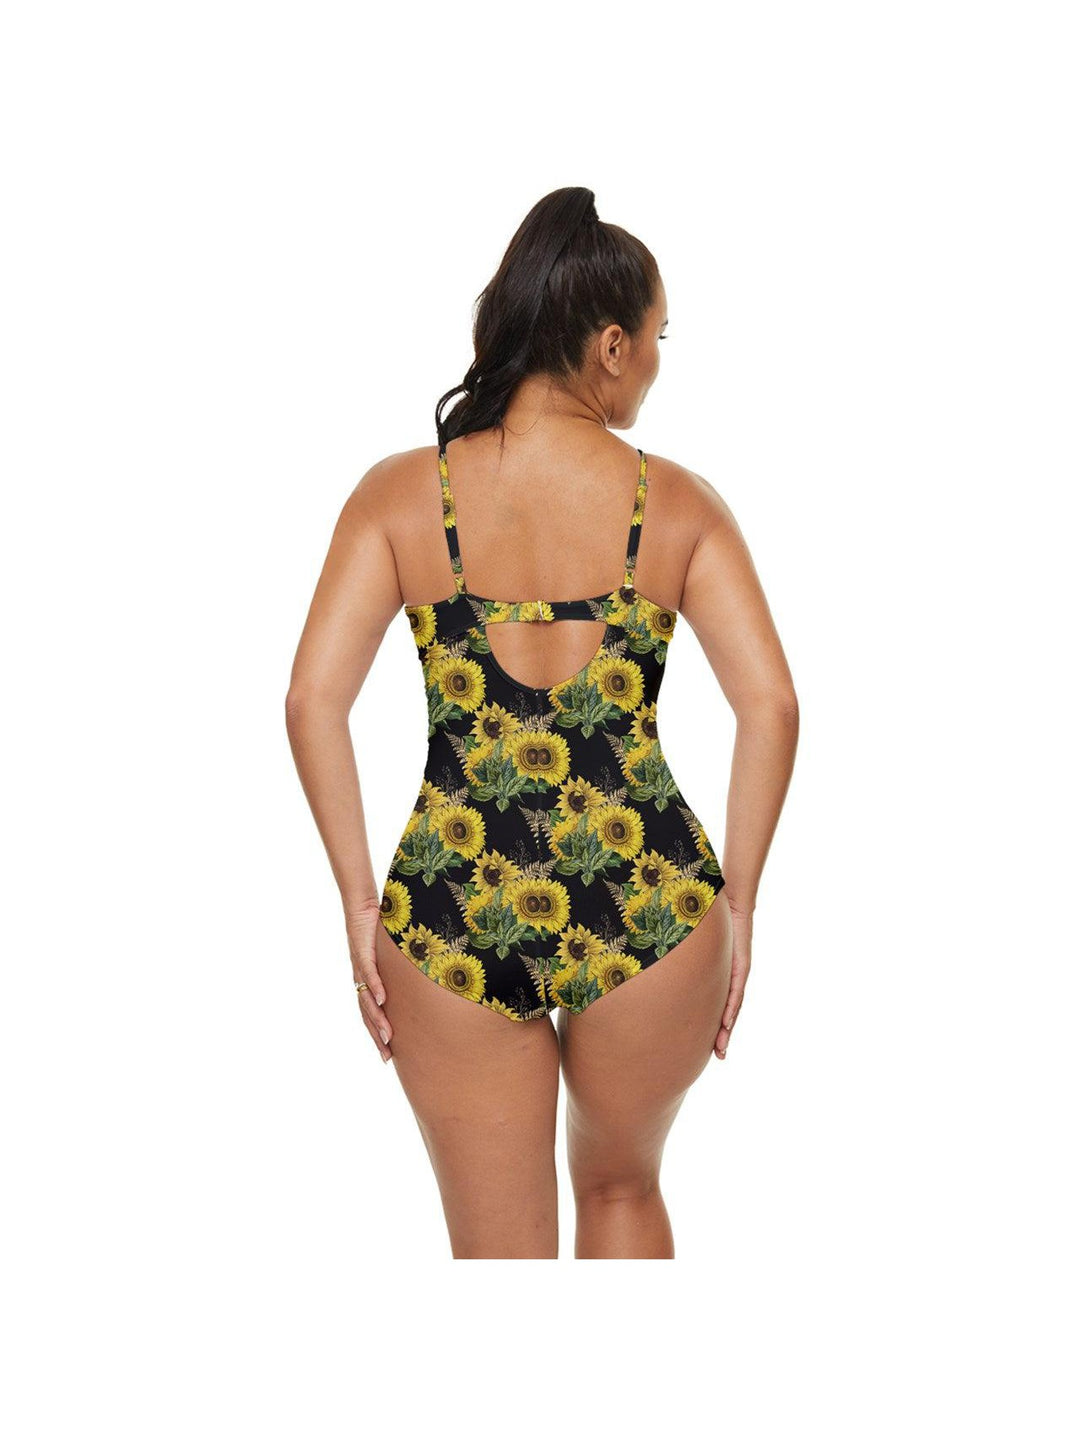 Sunflowers Retro Full Coverage Swimsuit